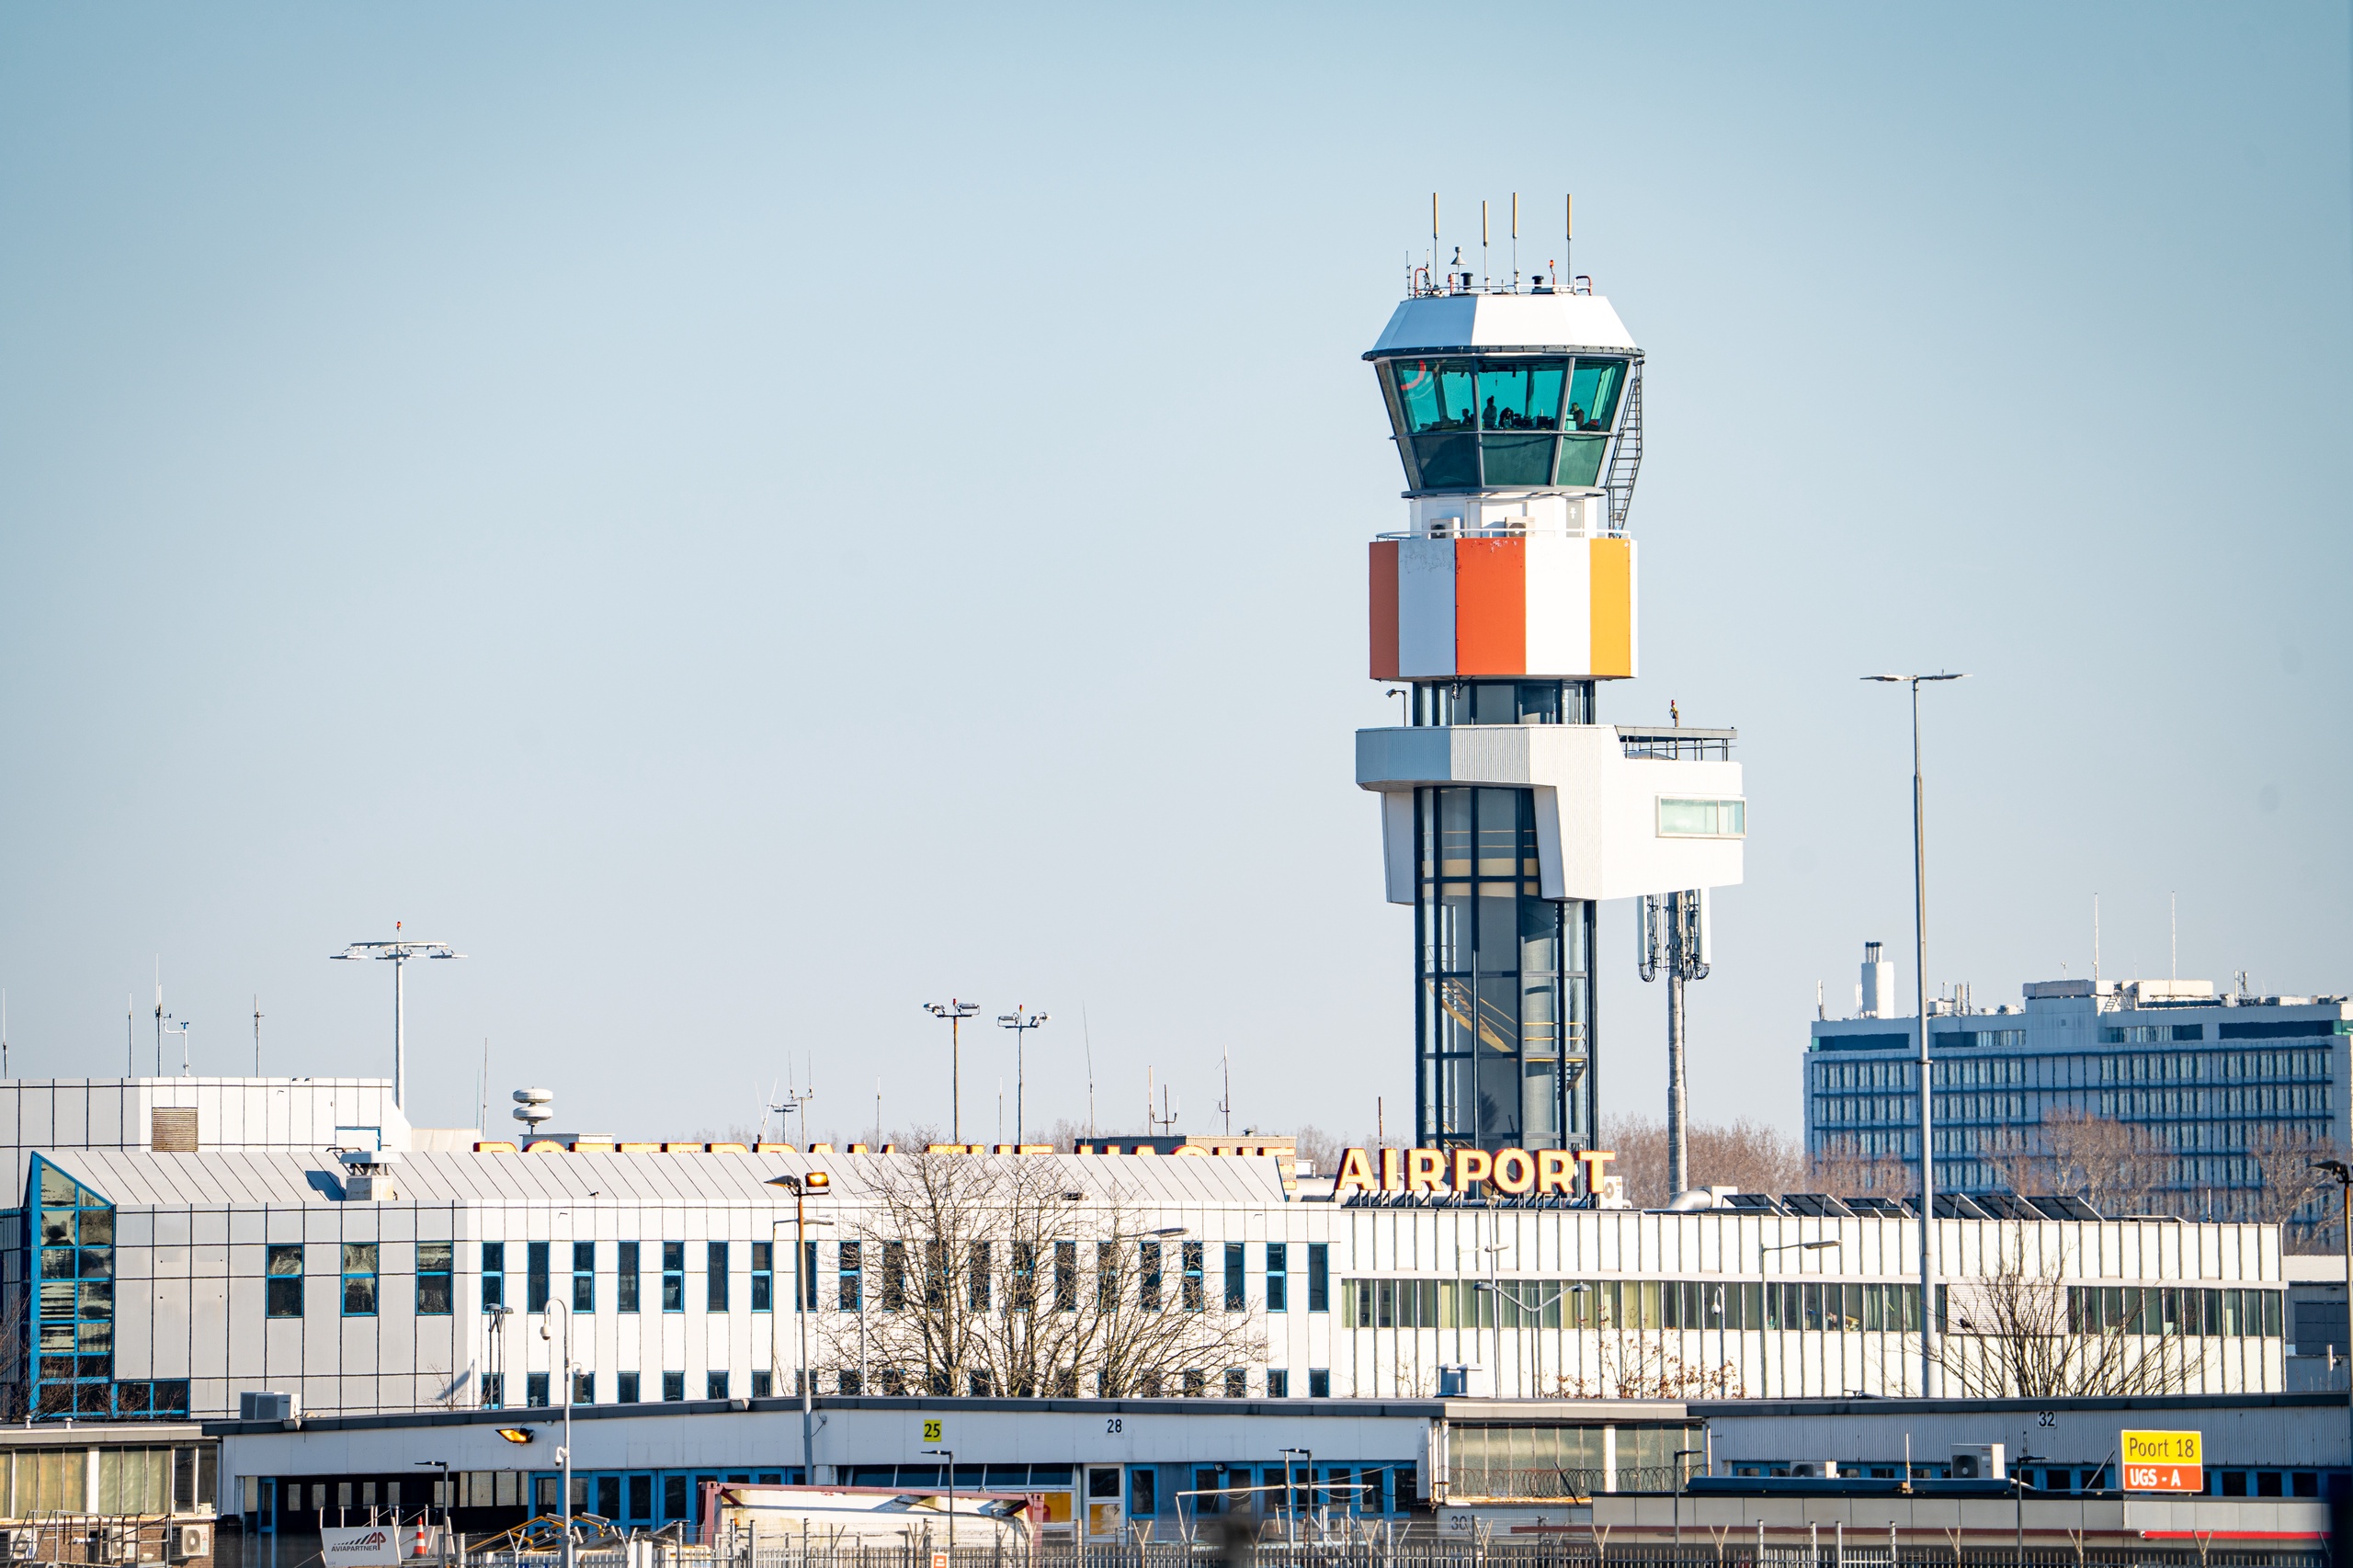 Er kan een streep door de plannen van Rotterdam The Hague Airport om verder uit te breiden. Omliggende gemeentes zijn unaniem tegen uitbreidingsplannen omdat ze bang zijn voor toenemende geluidsoverlast, en dat is een financiële aderlating voor de Nederlandse luchtvaart.